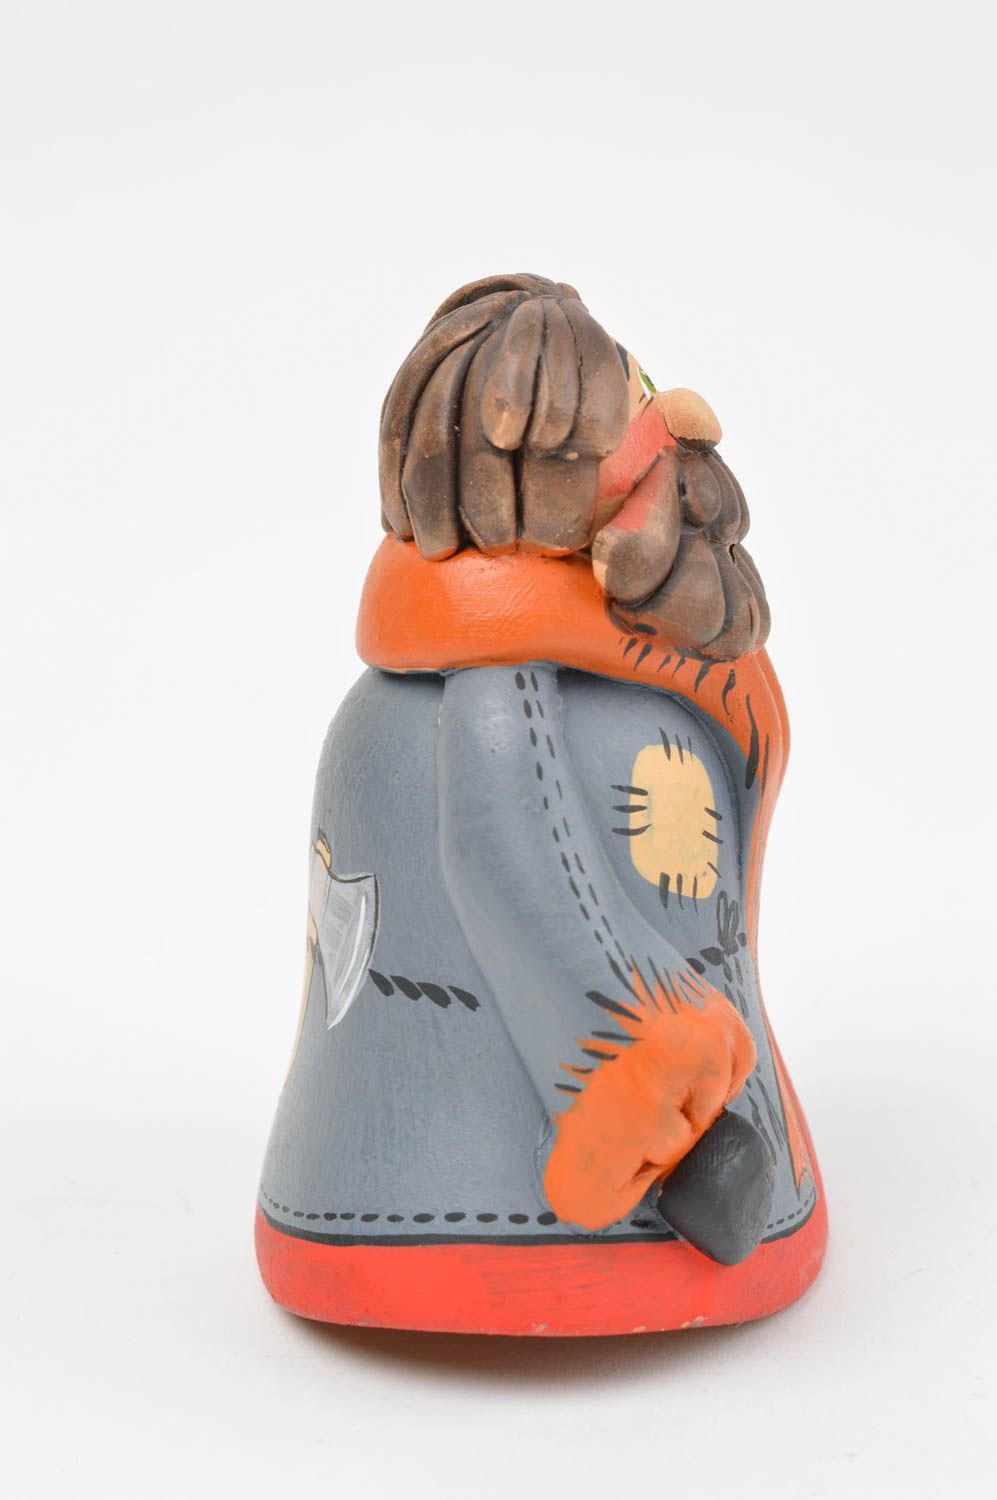 Расписной декоративный колокольчик из красной глины ручной работы Странник фото 2